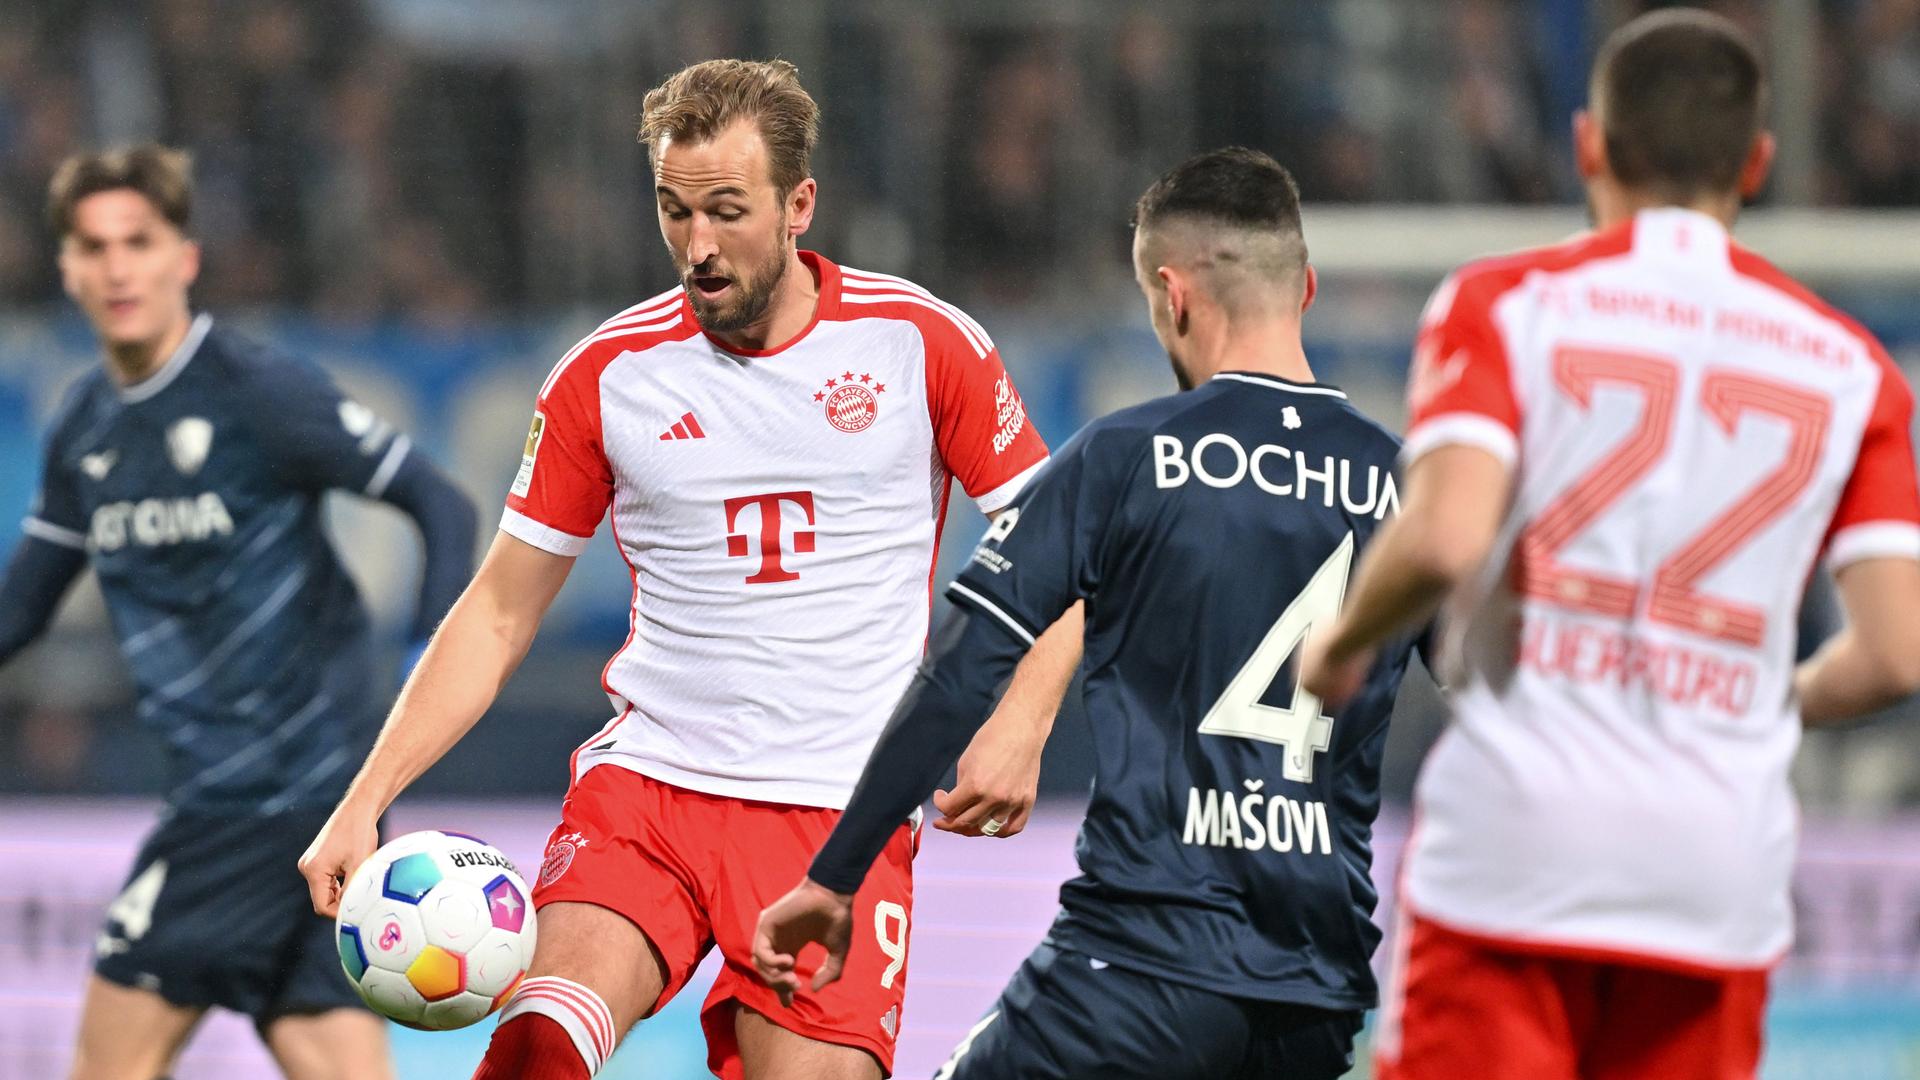 Bei der Bundesliga-Partie Bochum gegen Bayern kämpfen Münchens Harry Kane und Bochums Erhan Masovic um den Ball.